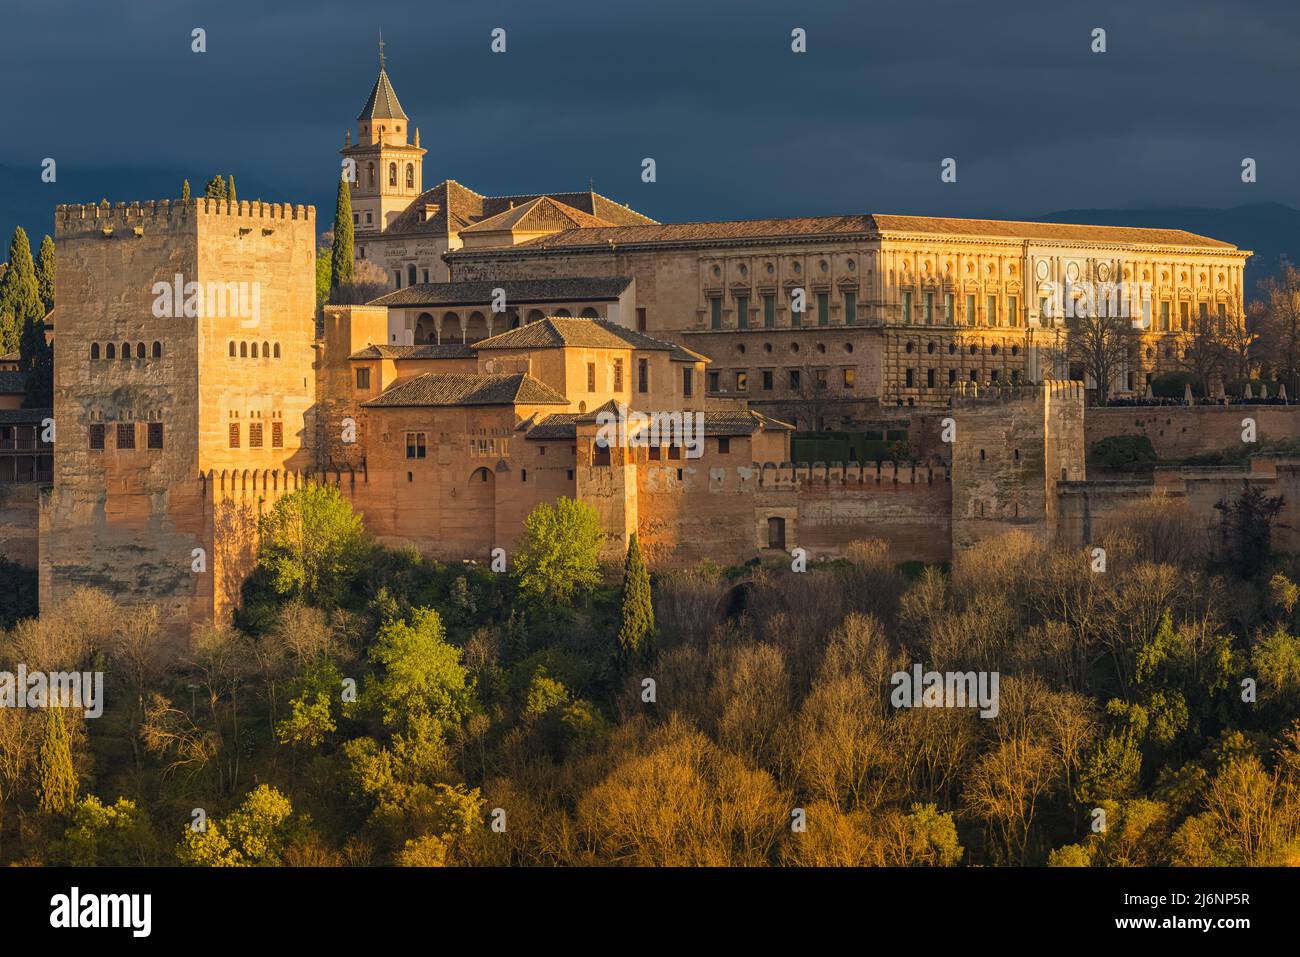 La Alhambra es un palacio y complejo de fortaleza situado en Granada, Andalucía. Es uno de los monumentos más famosos de la arquitectura islámica y. Foto de stock